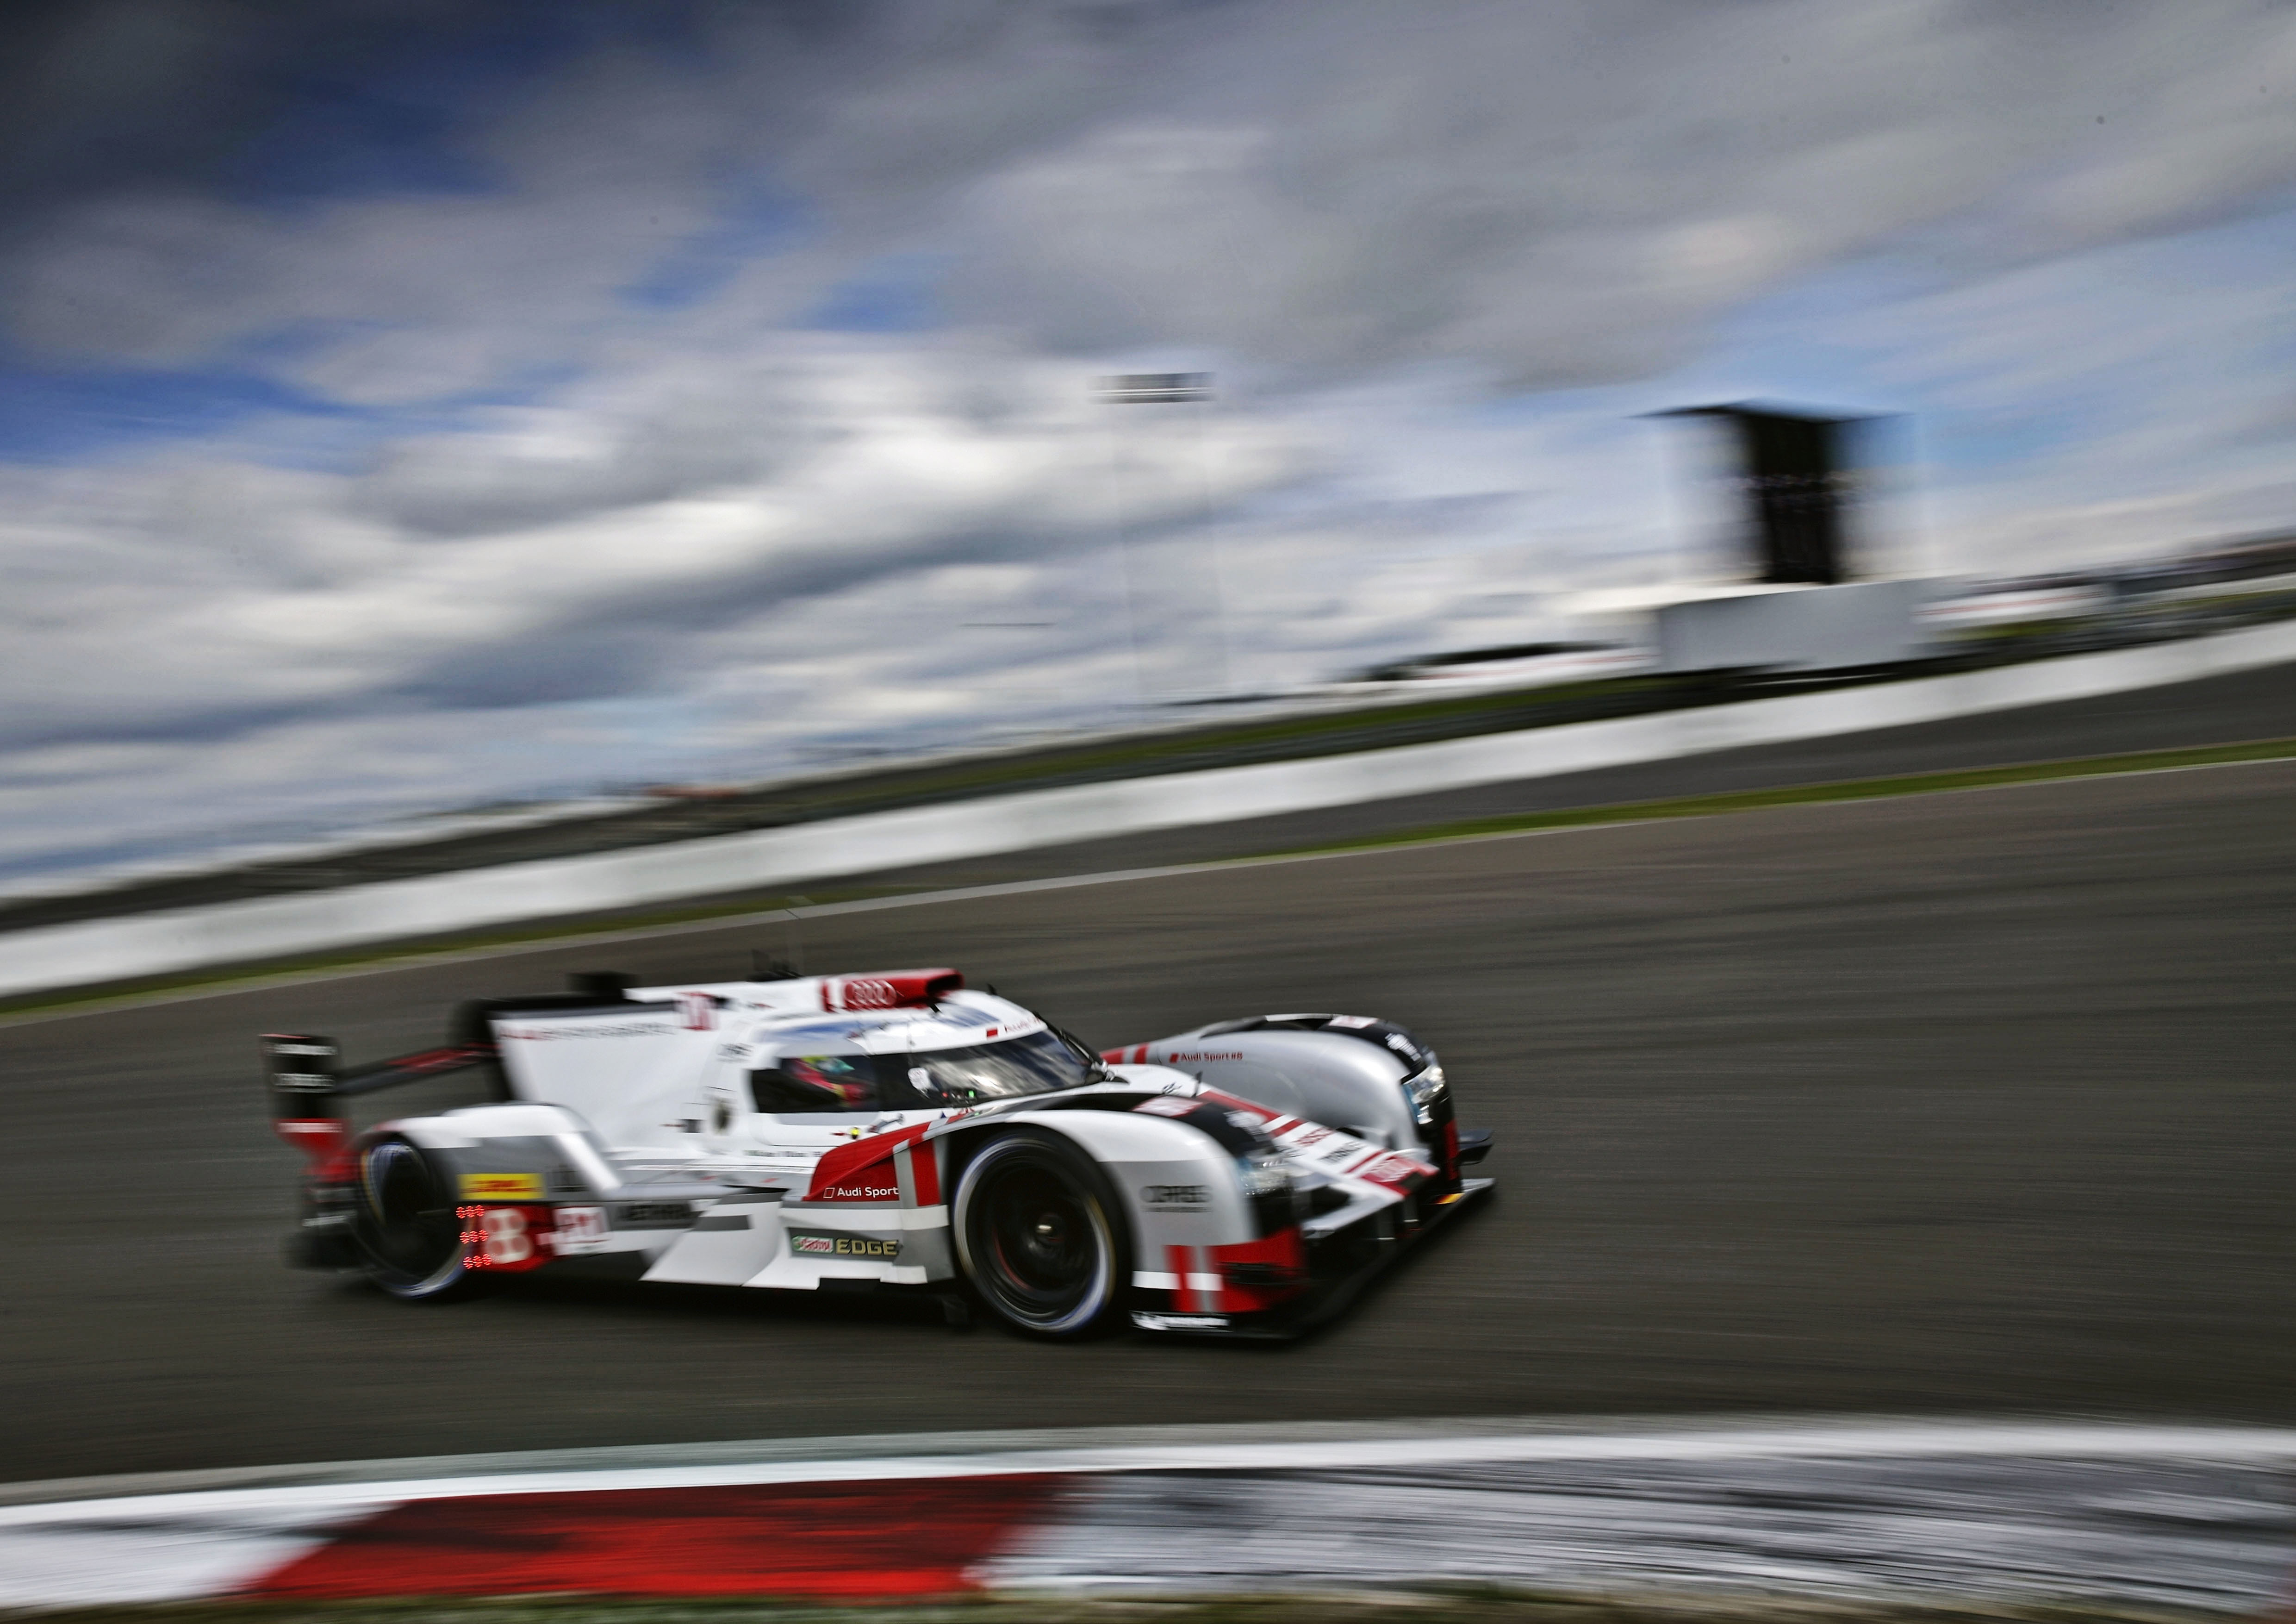 Po wyścigu Mistrzostw Świata FIA-WEC na torze Nürburgring, Audi nadal zachowuje przewagę